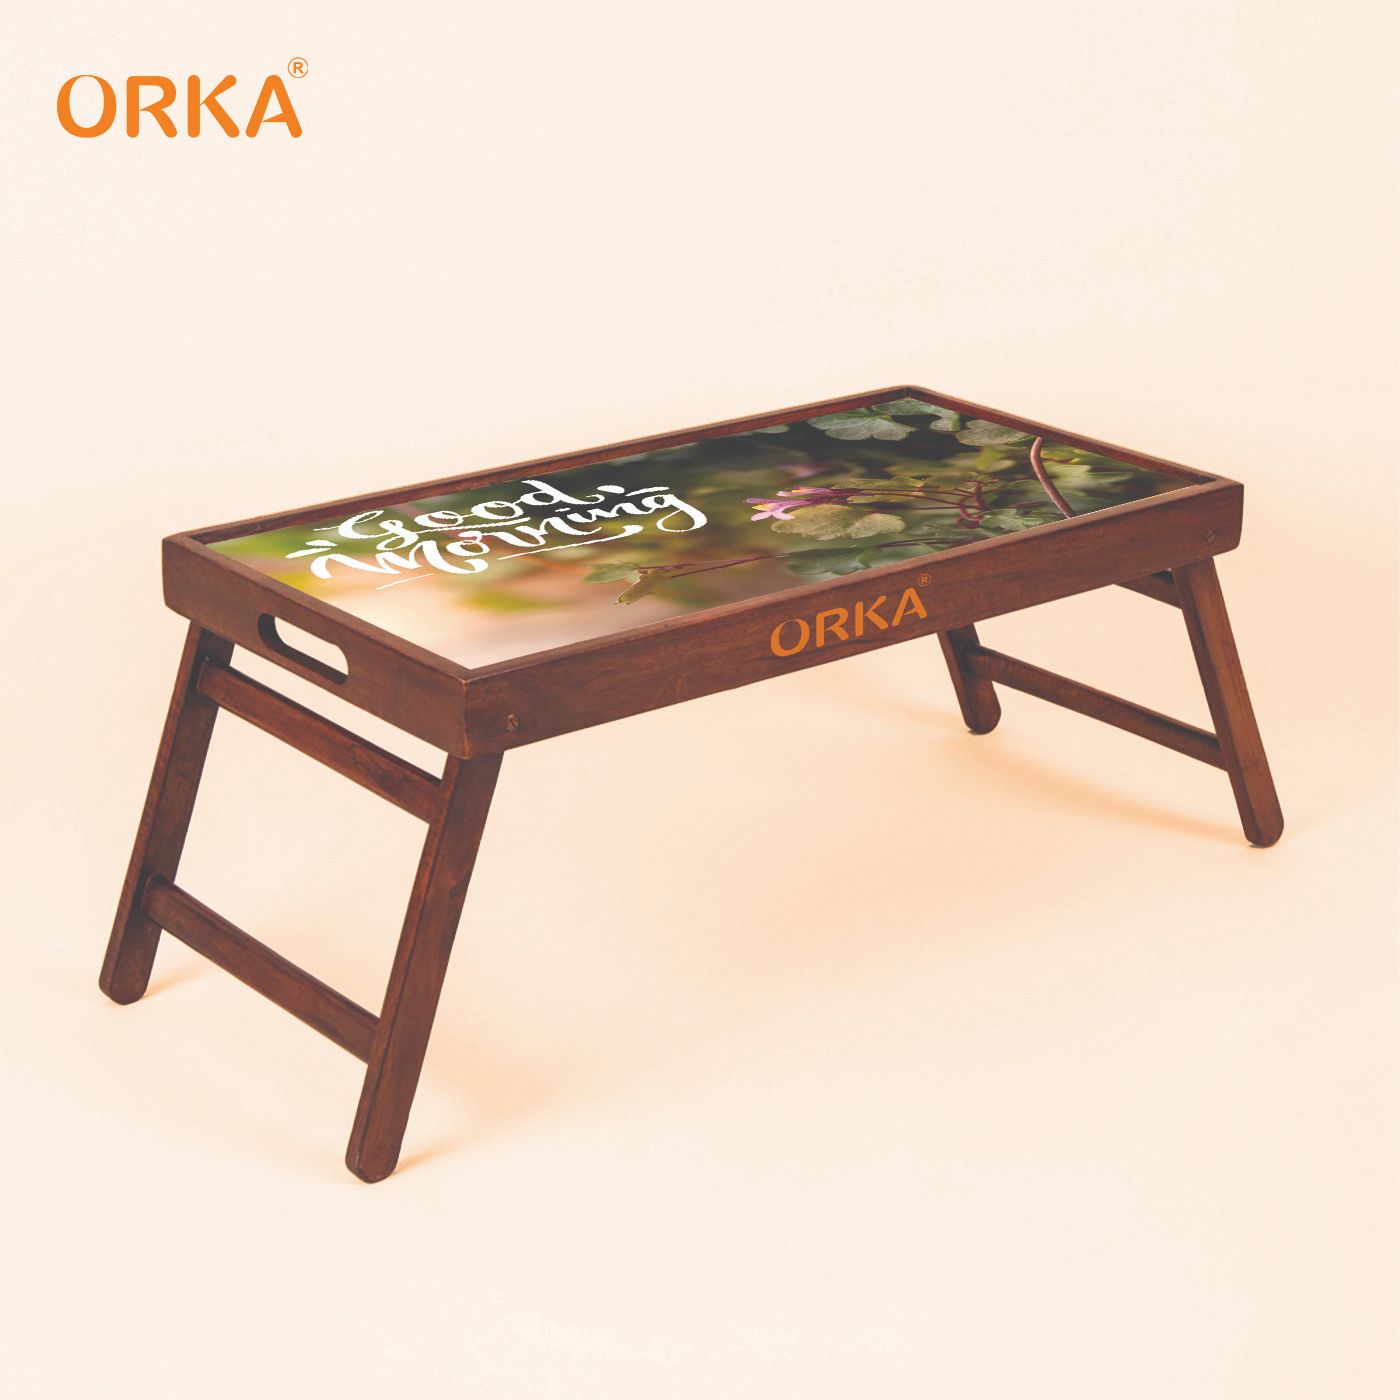 ORKA Sunshine Foldable Pine Wood Breakfast Table (Multicolor)  